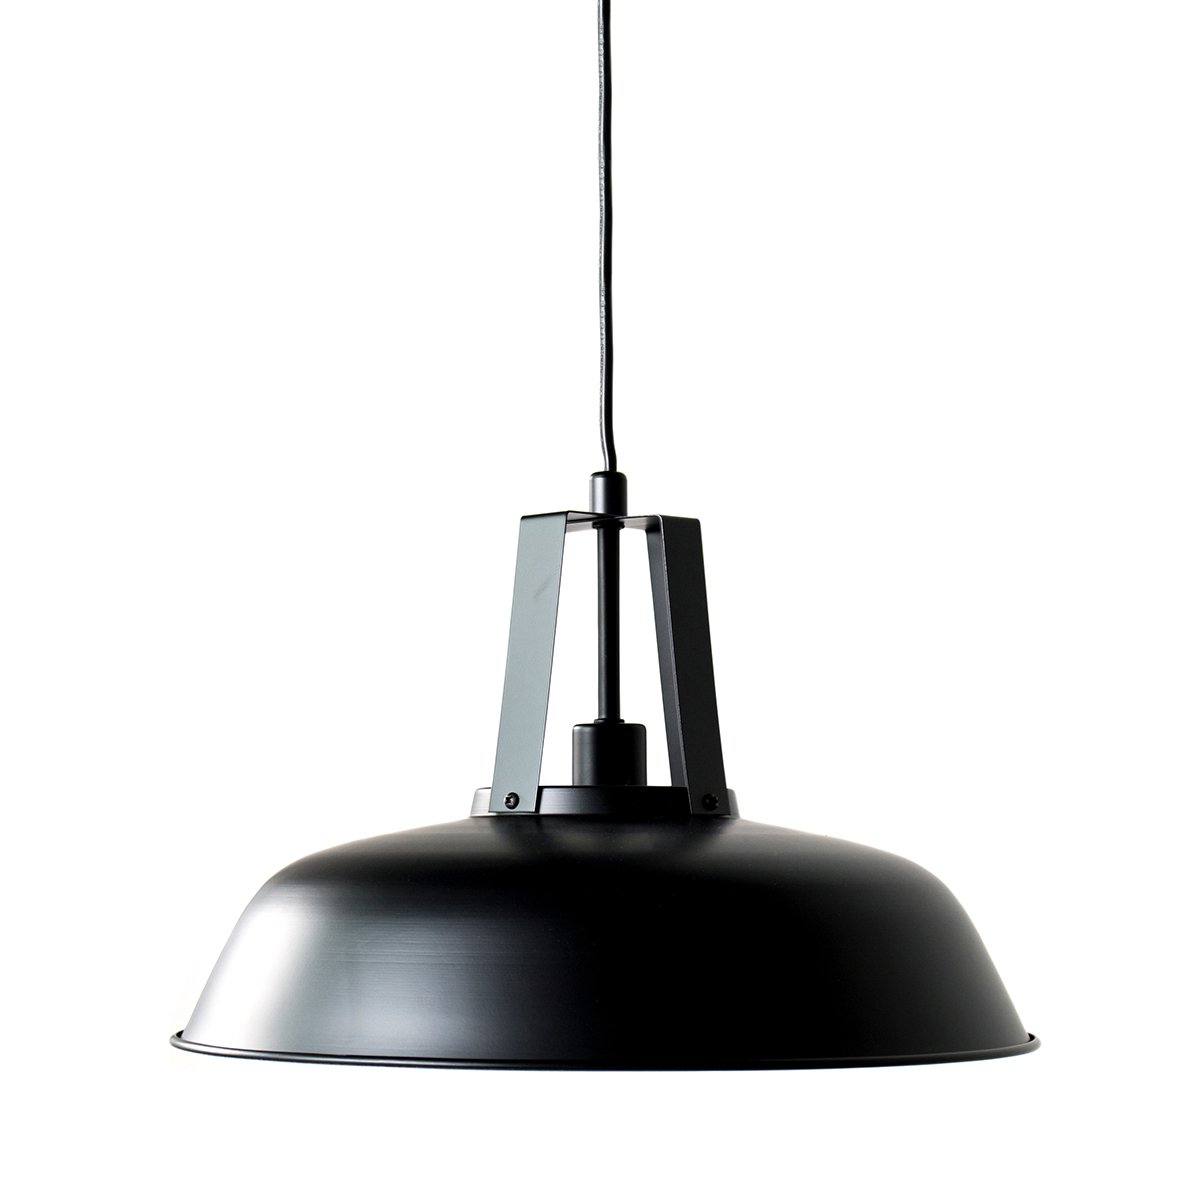 Hængelampe industriel sort Carpineti - Ø 45 cm